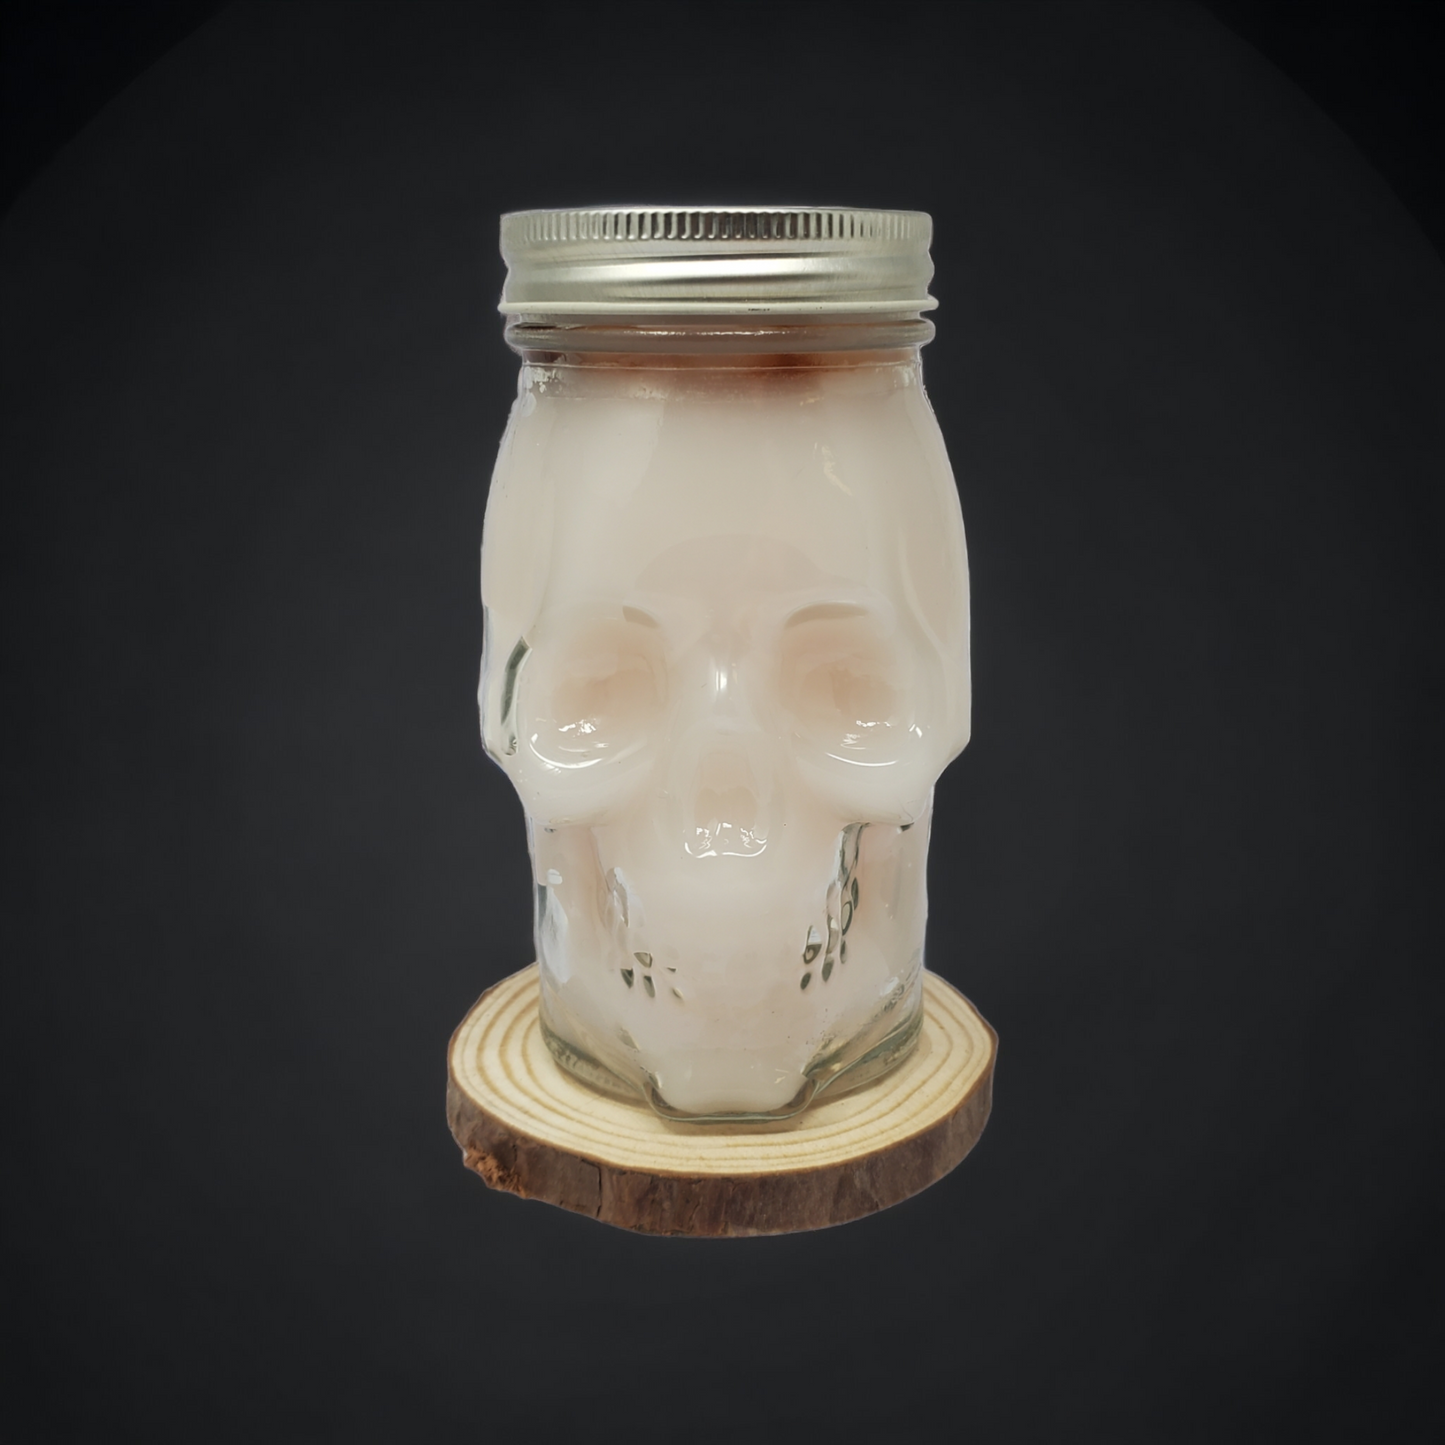 Skull Mason Jar Candles